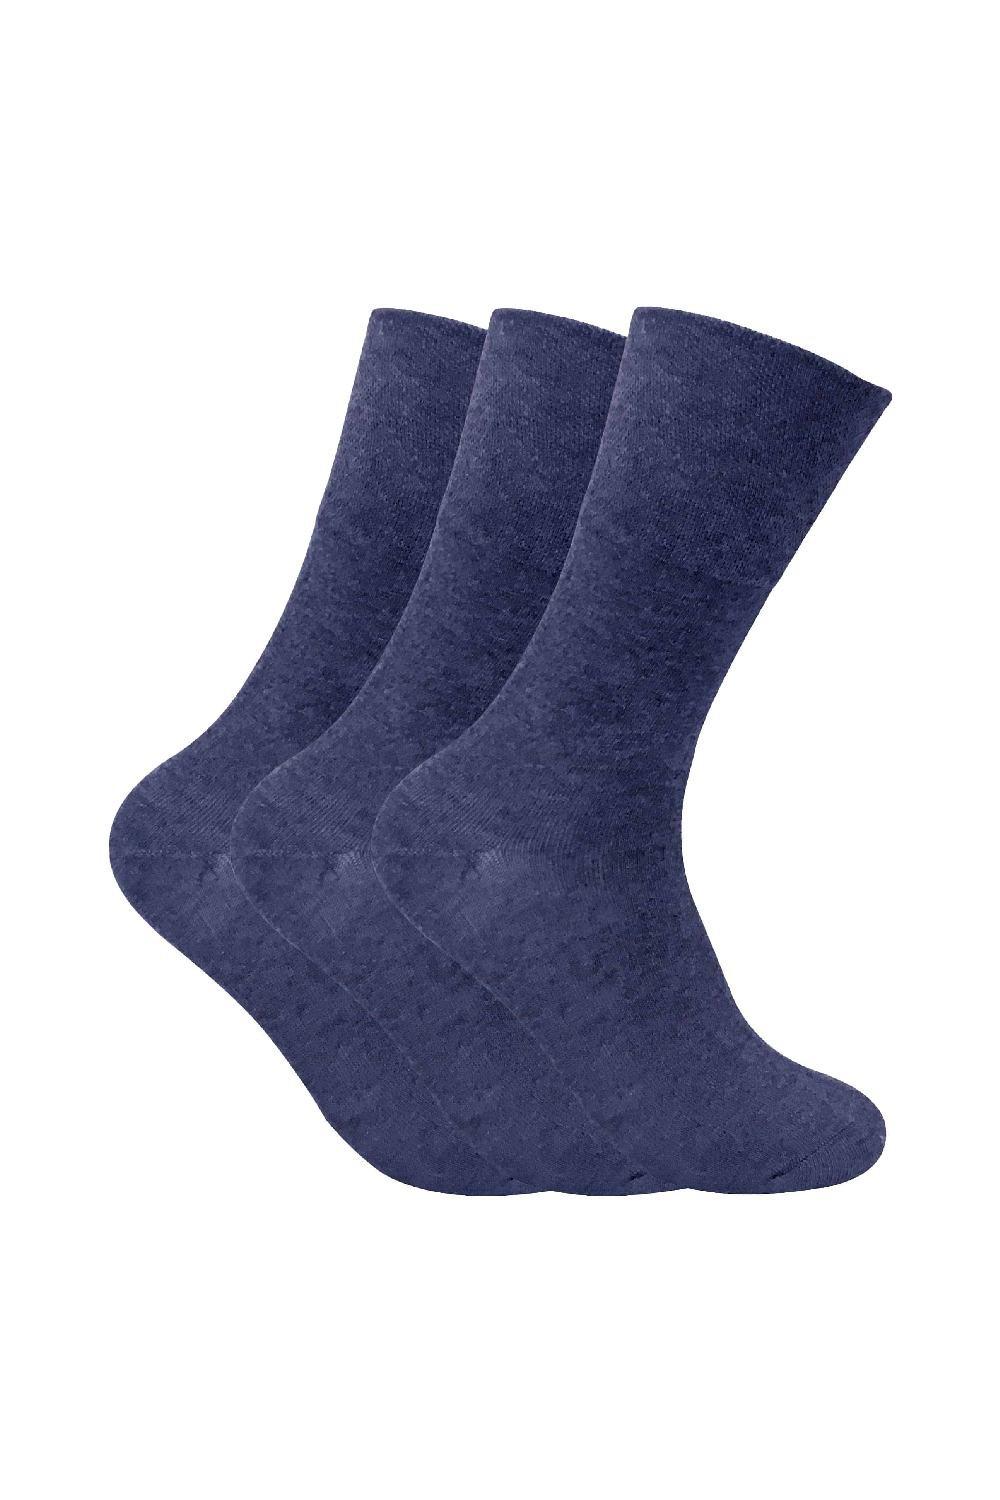 3 Pack Non Elastic Thermal Diabetic Socks for Poor Circulation